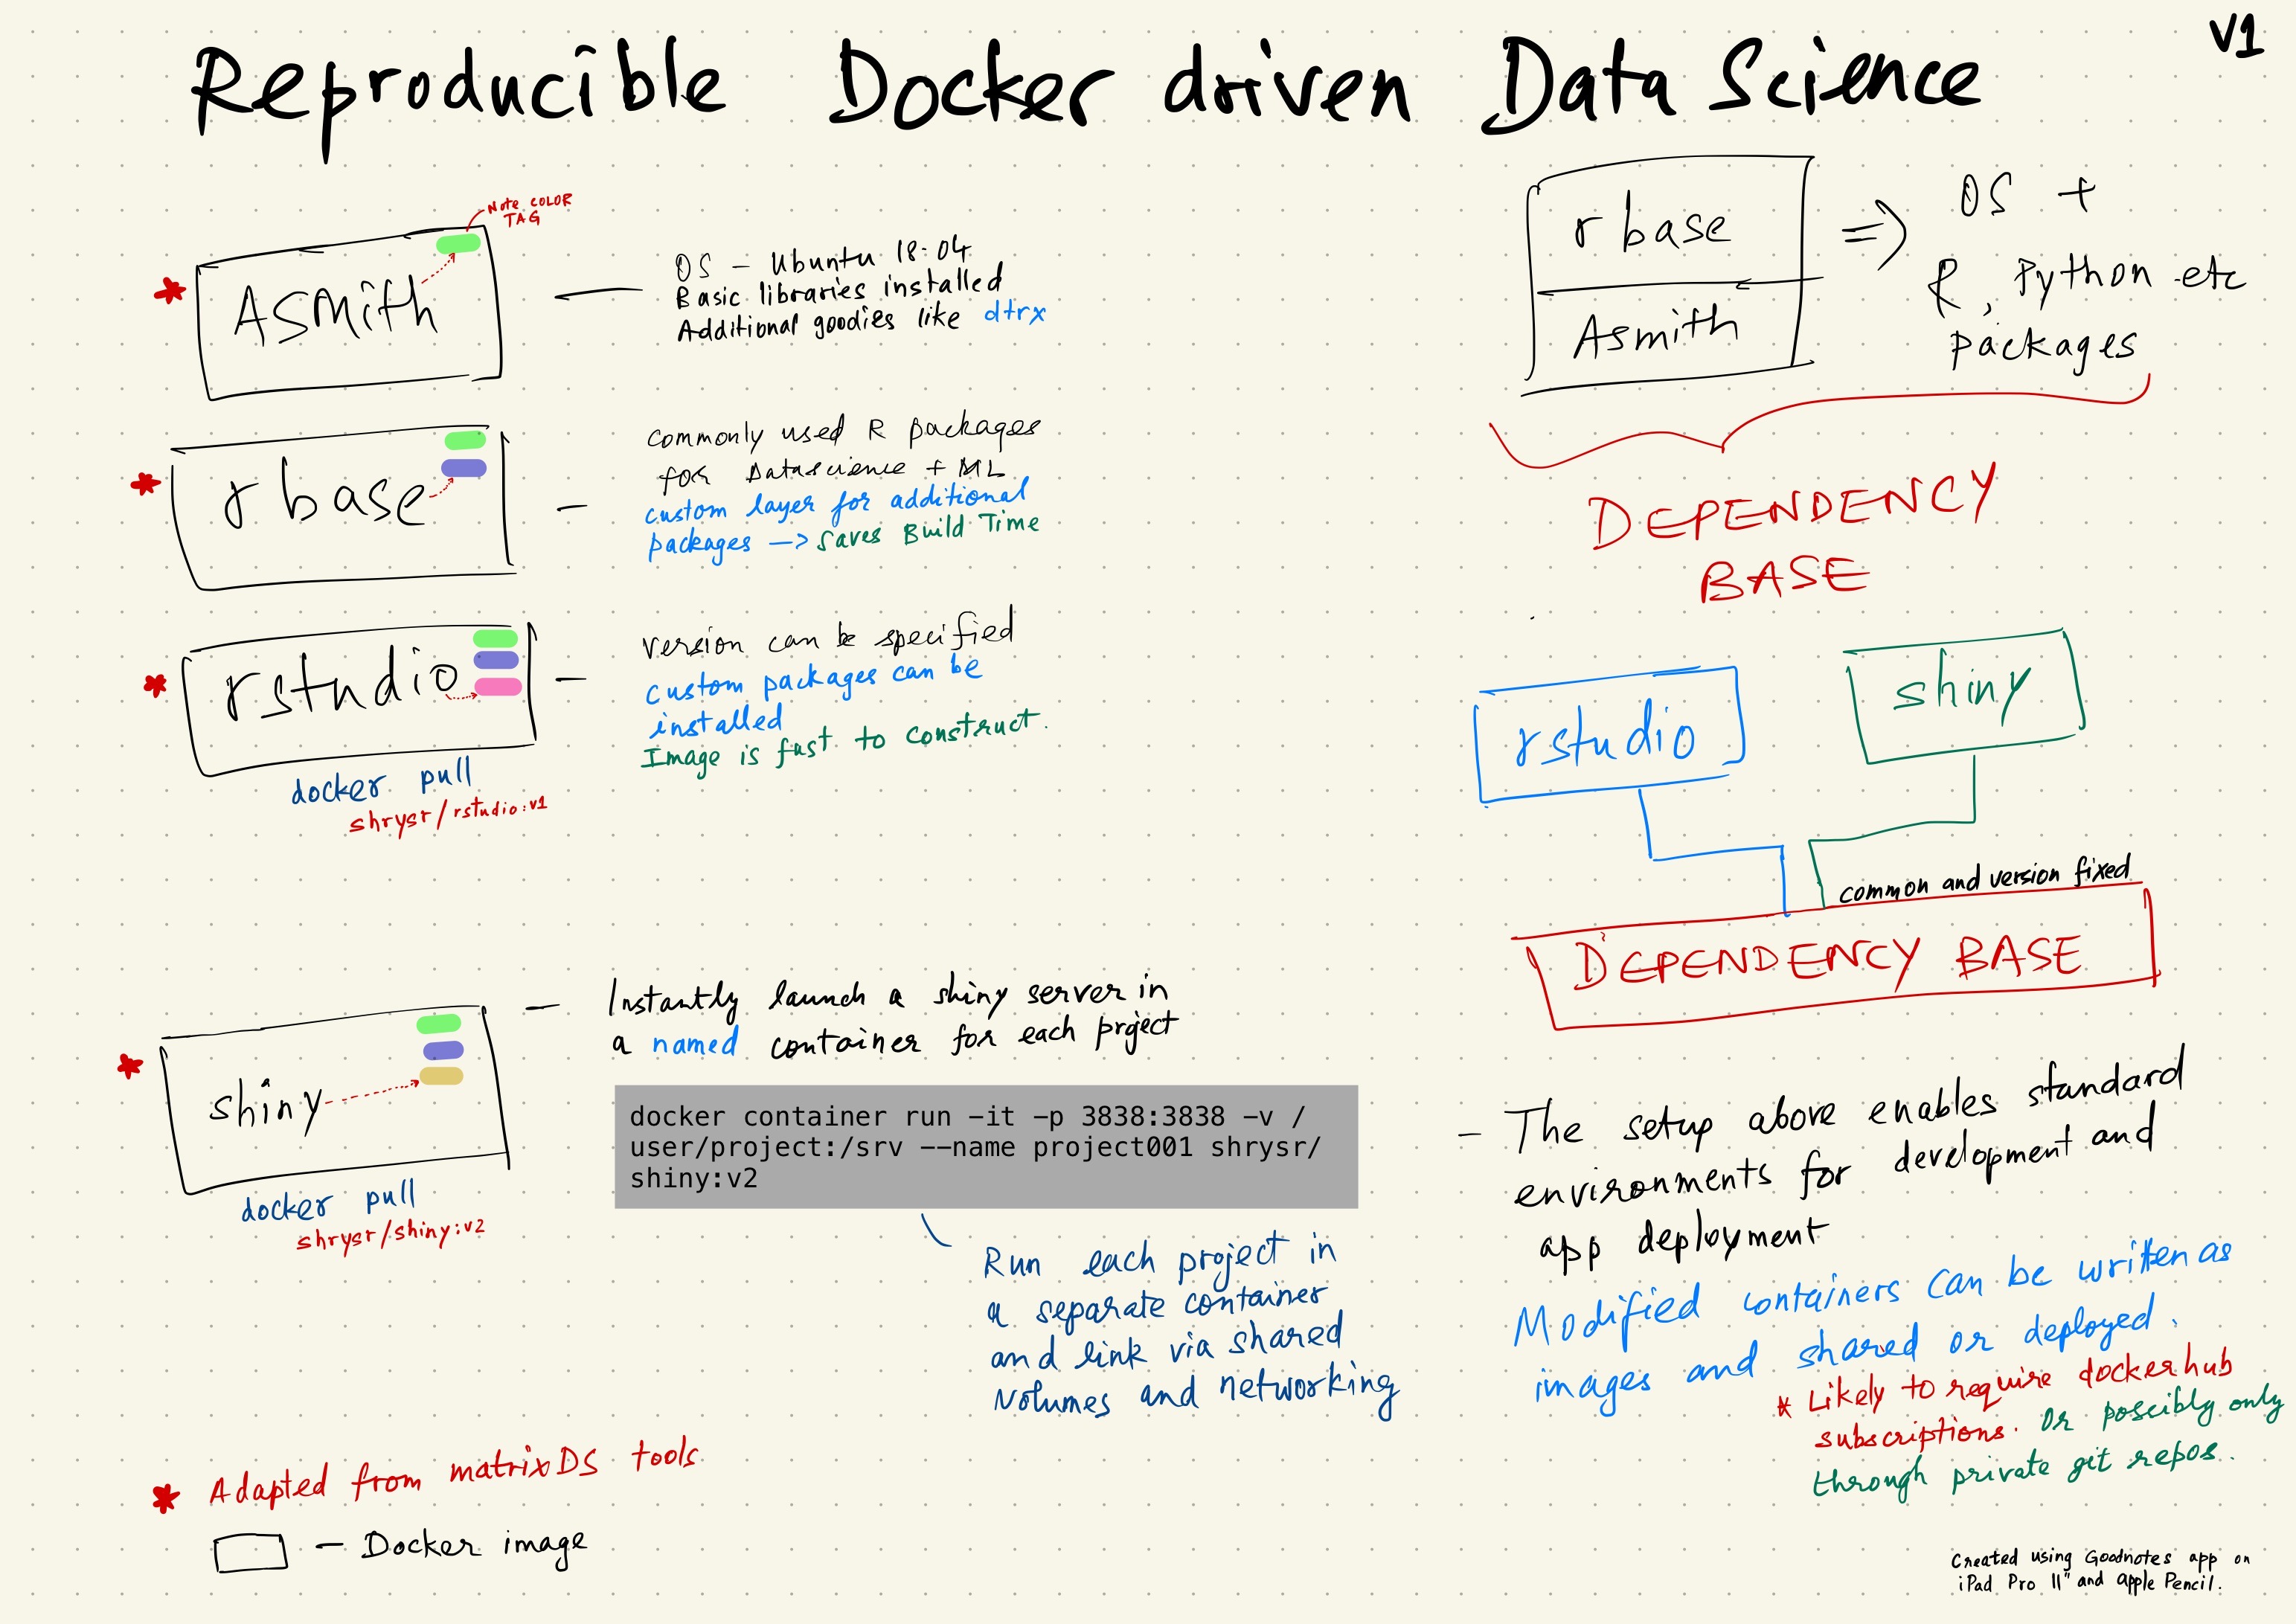 _images/docker-driven-datascience.JPG